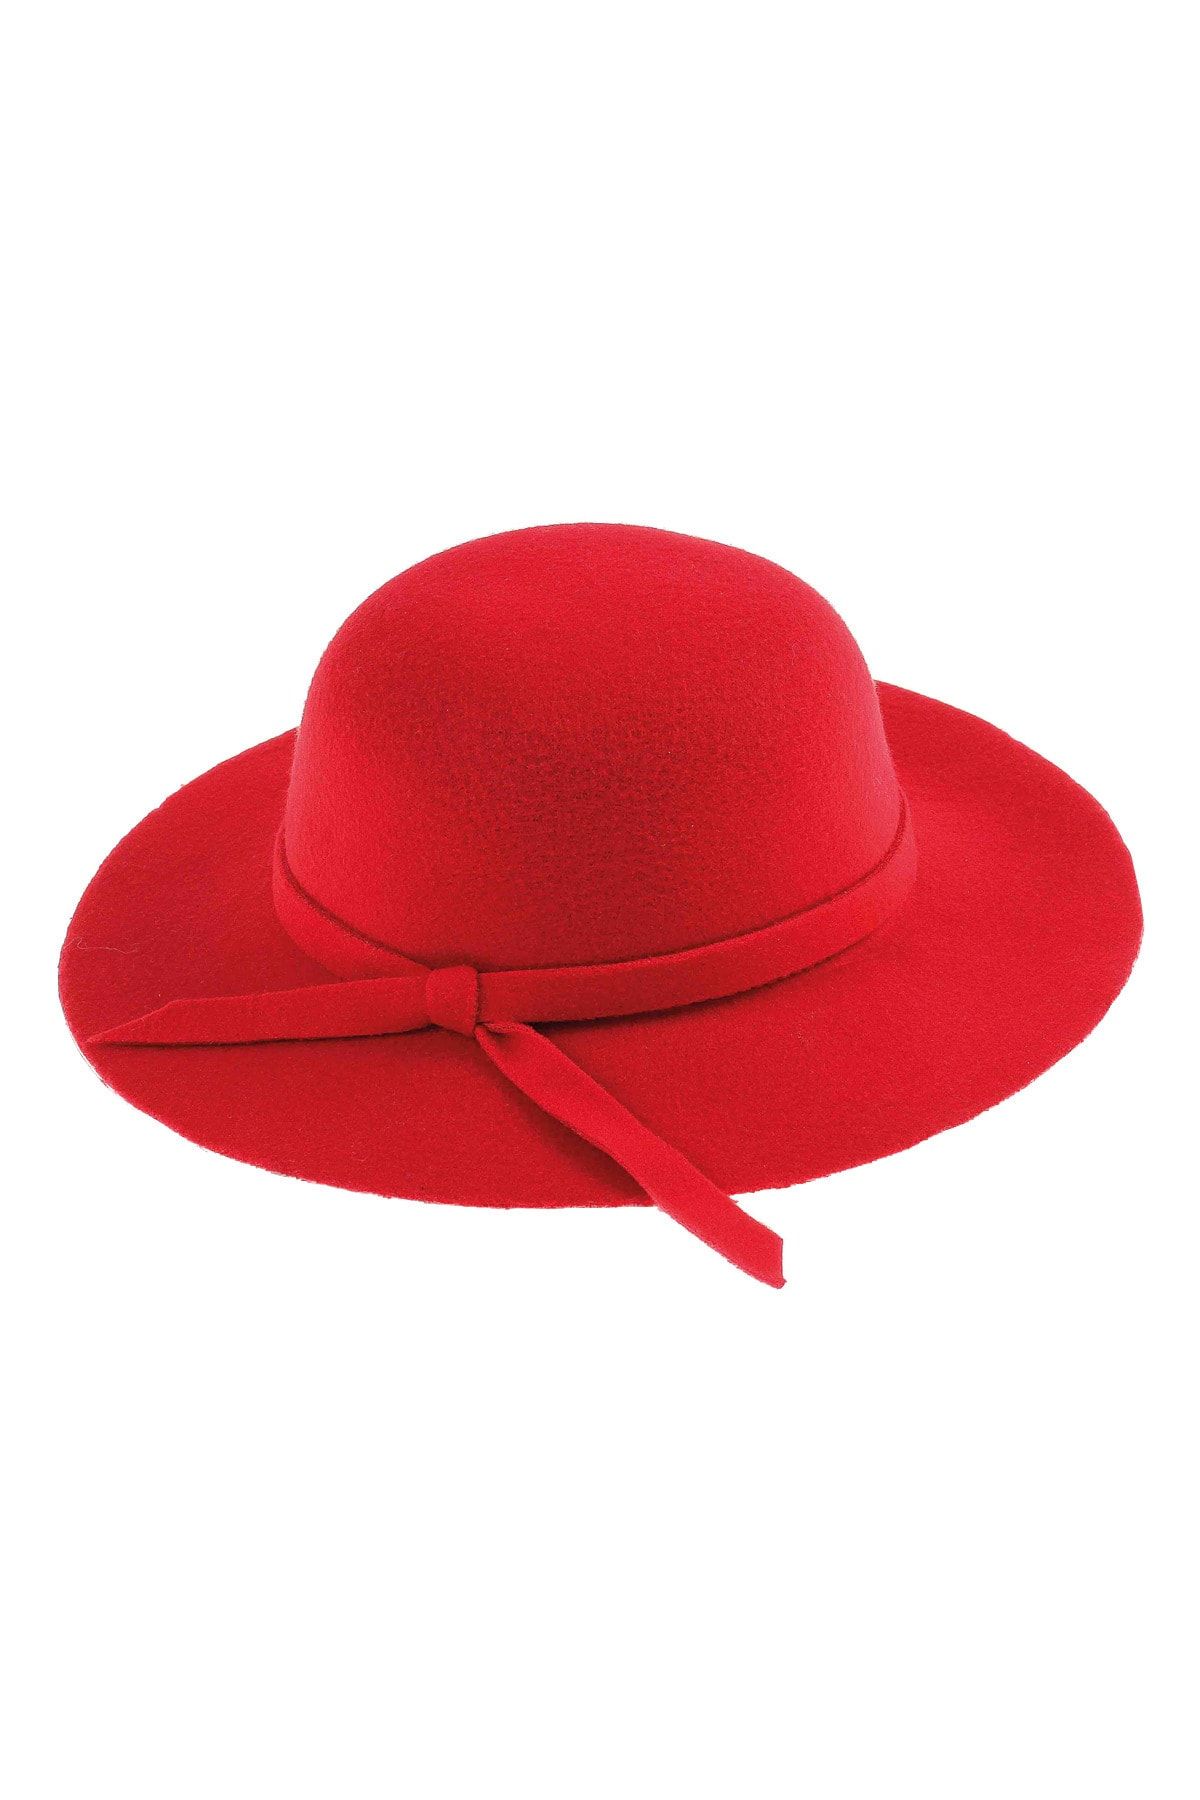 Bay Şapkacı Kız Çocuk Geniş Kenarlı Kaşe Şapka 7168 Kırmızı